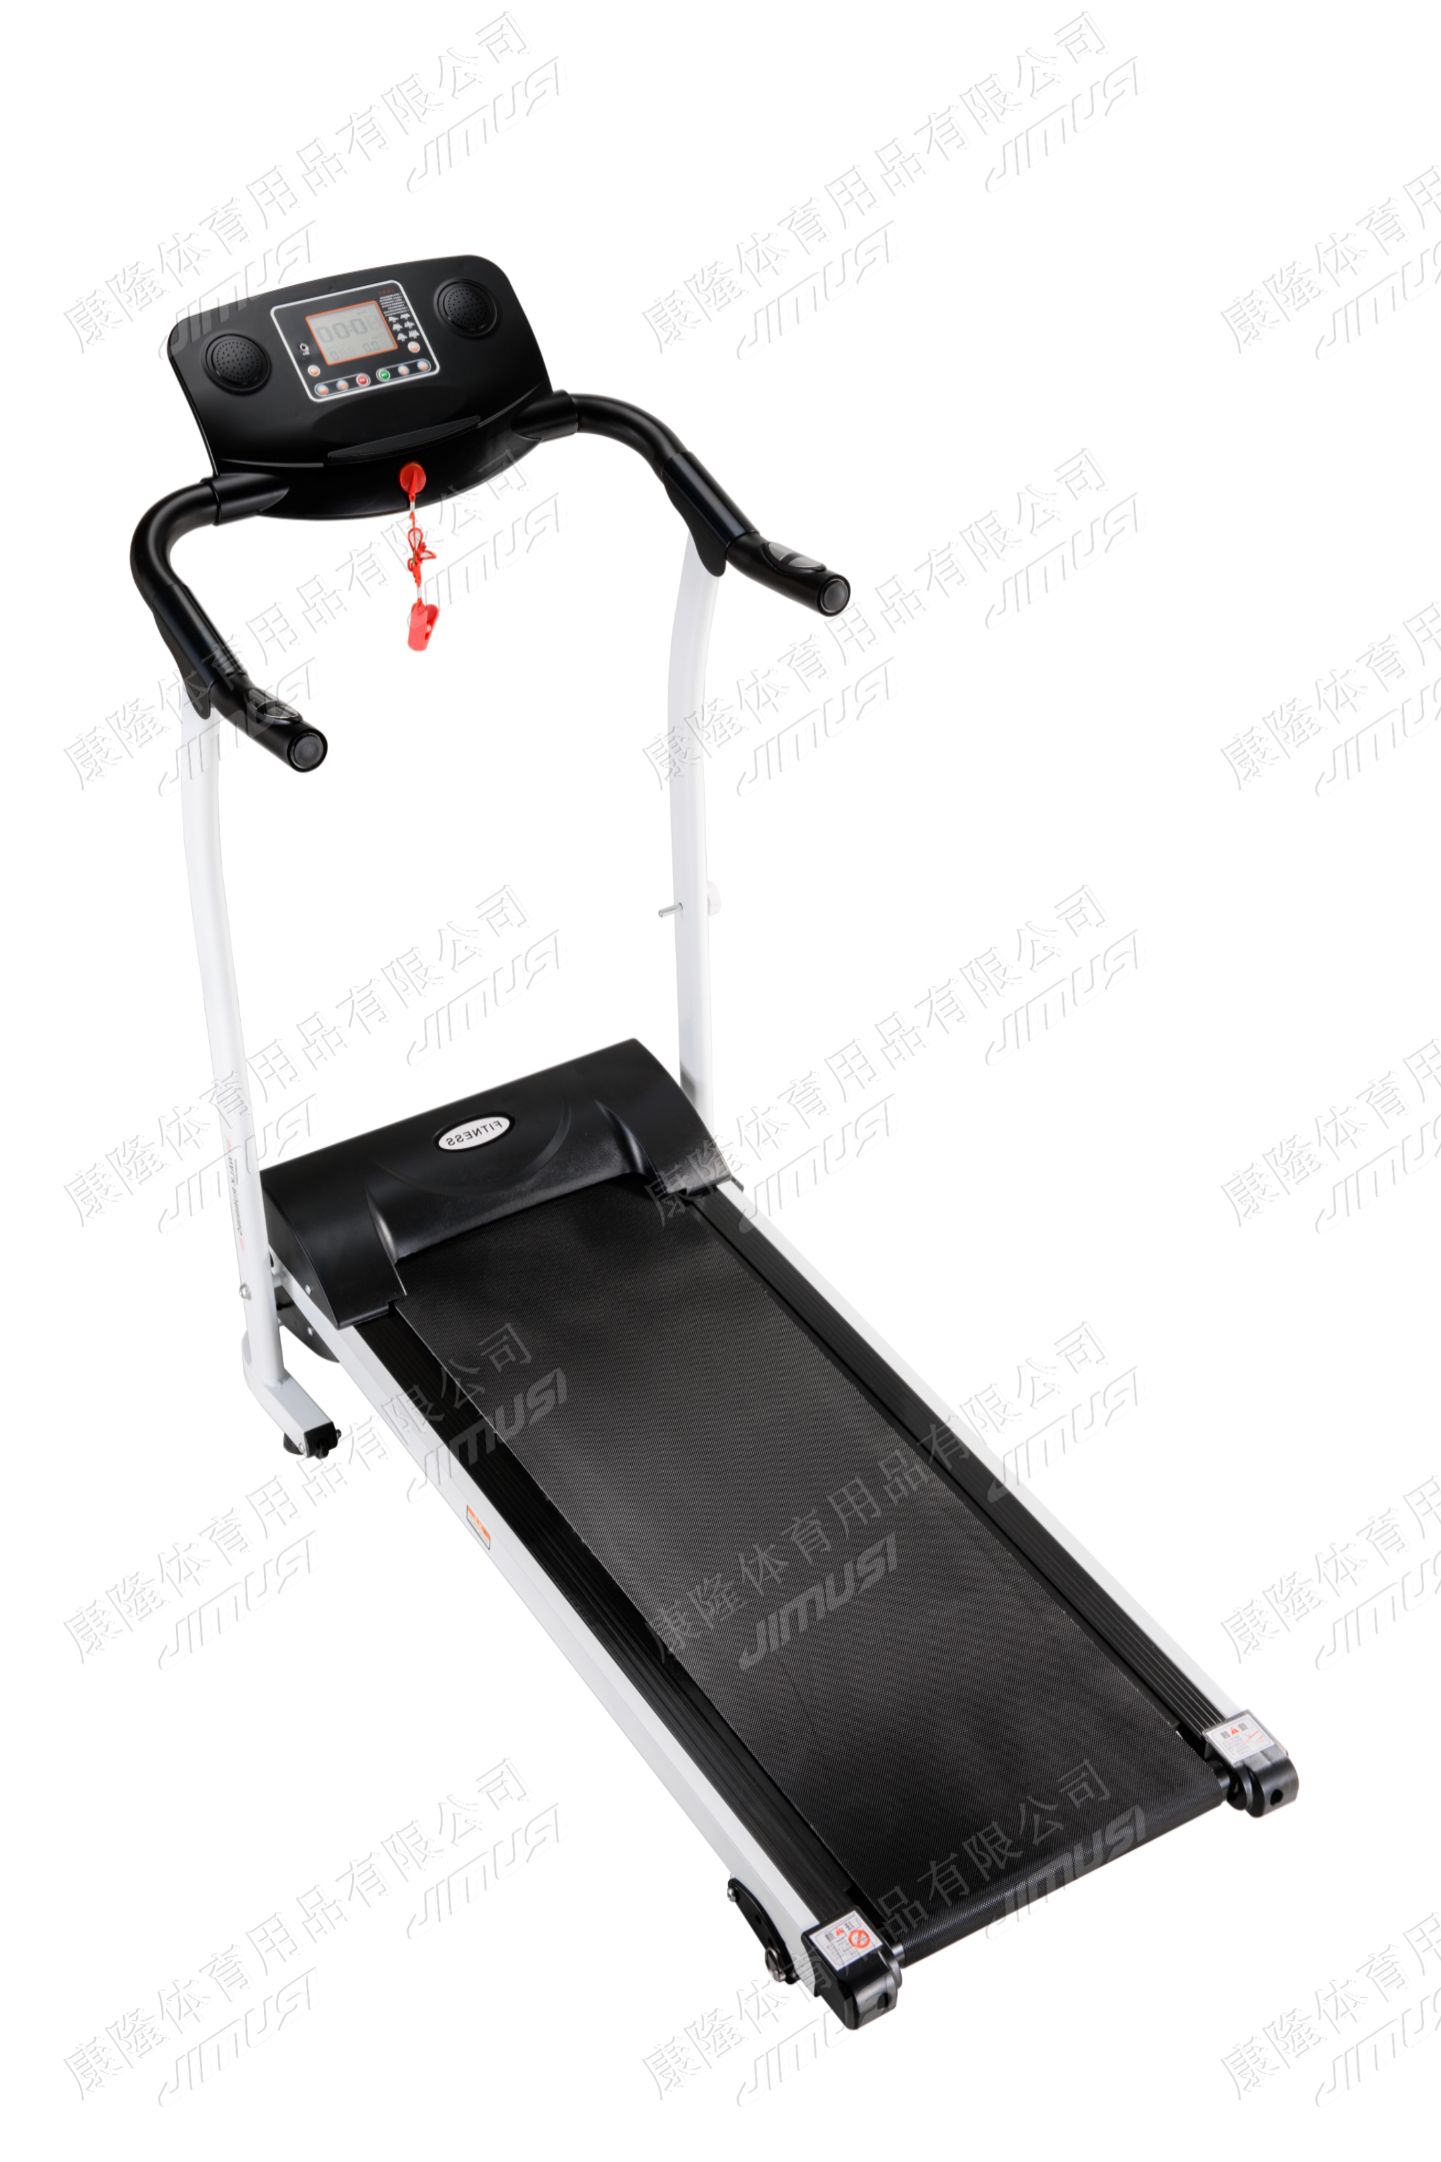 跑步机 健身 运动 JIMUSI HT-Z2 软跑 静音 treadmill 走步机图